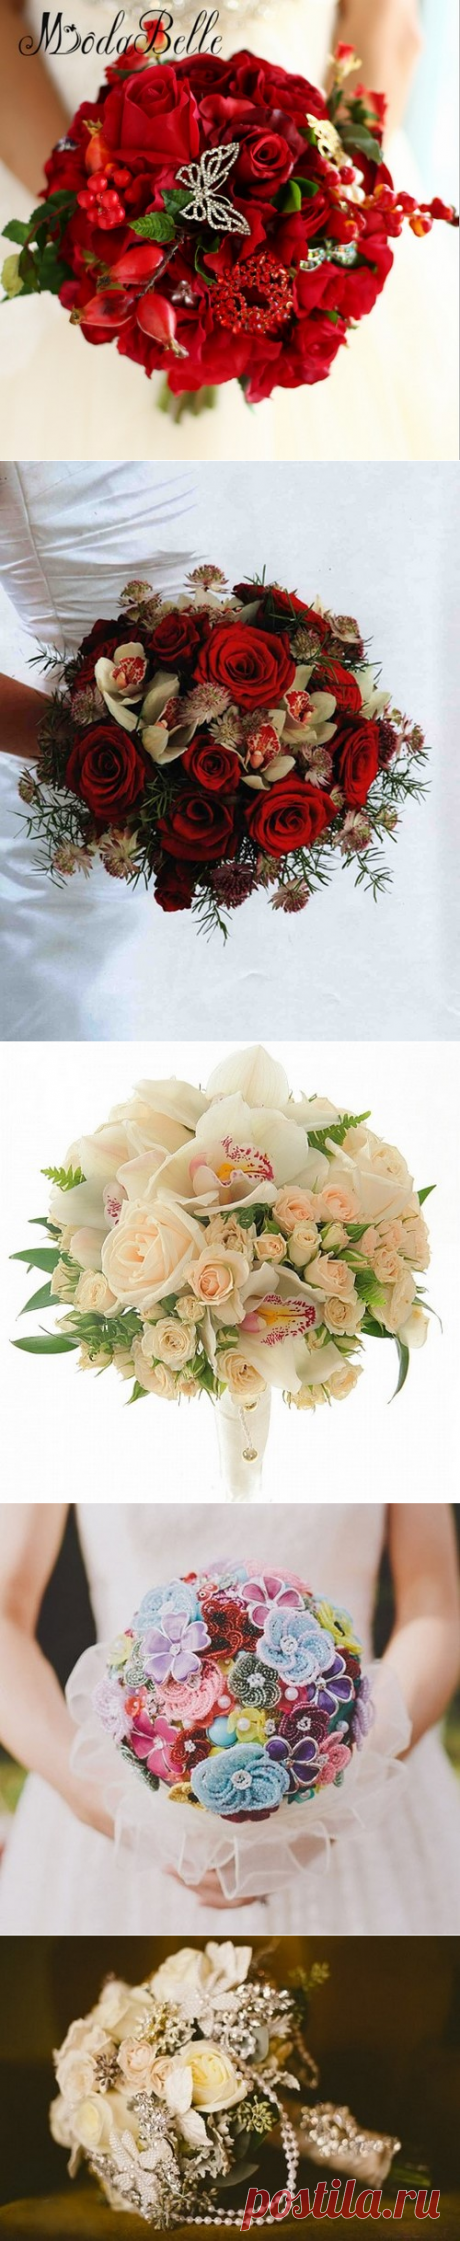 Какой свадебный букет сделать - фото идеи, красивые свадебные букеты для невесты - примеры